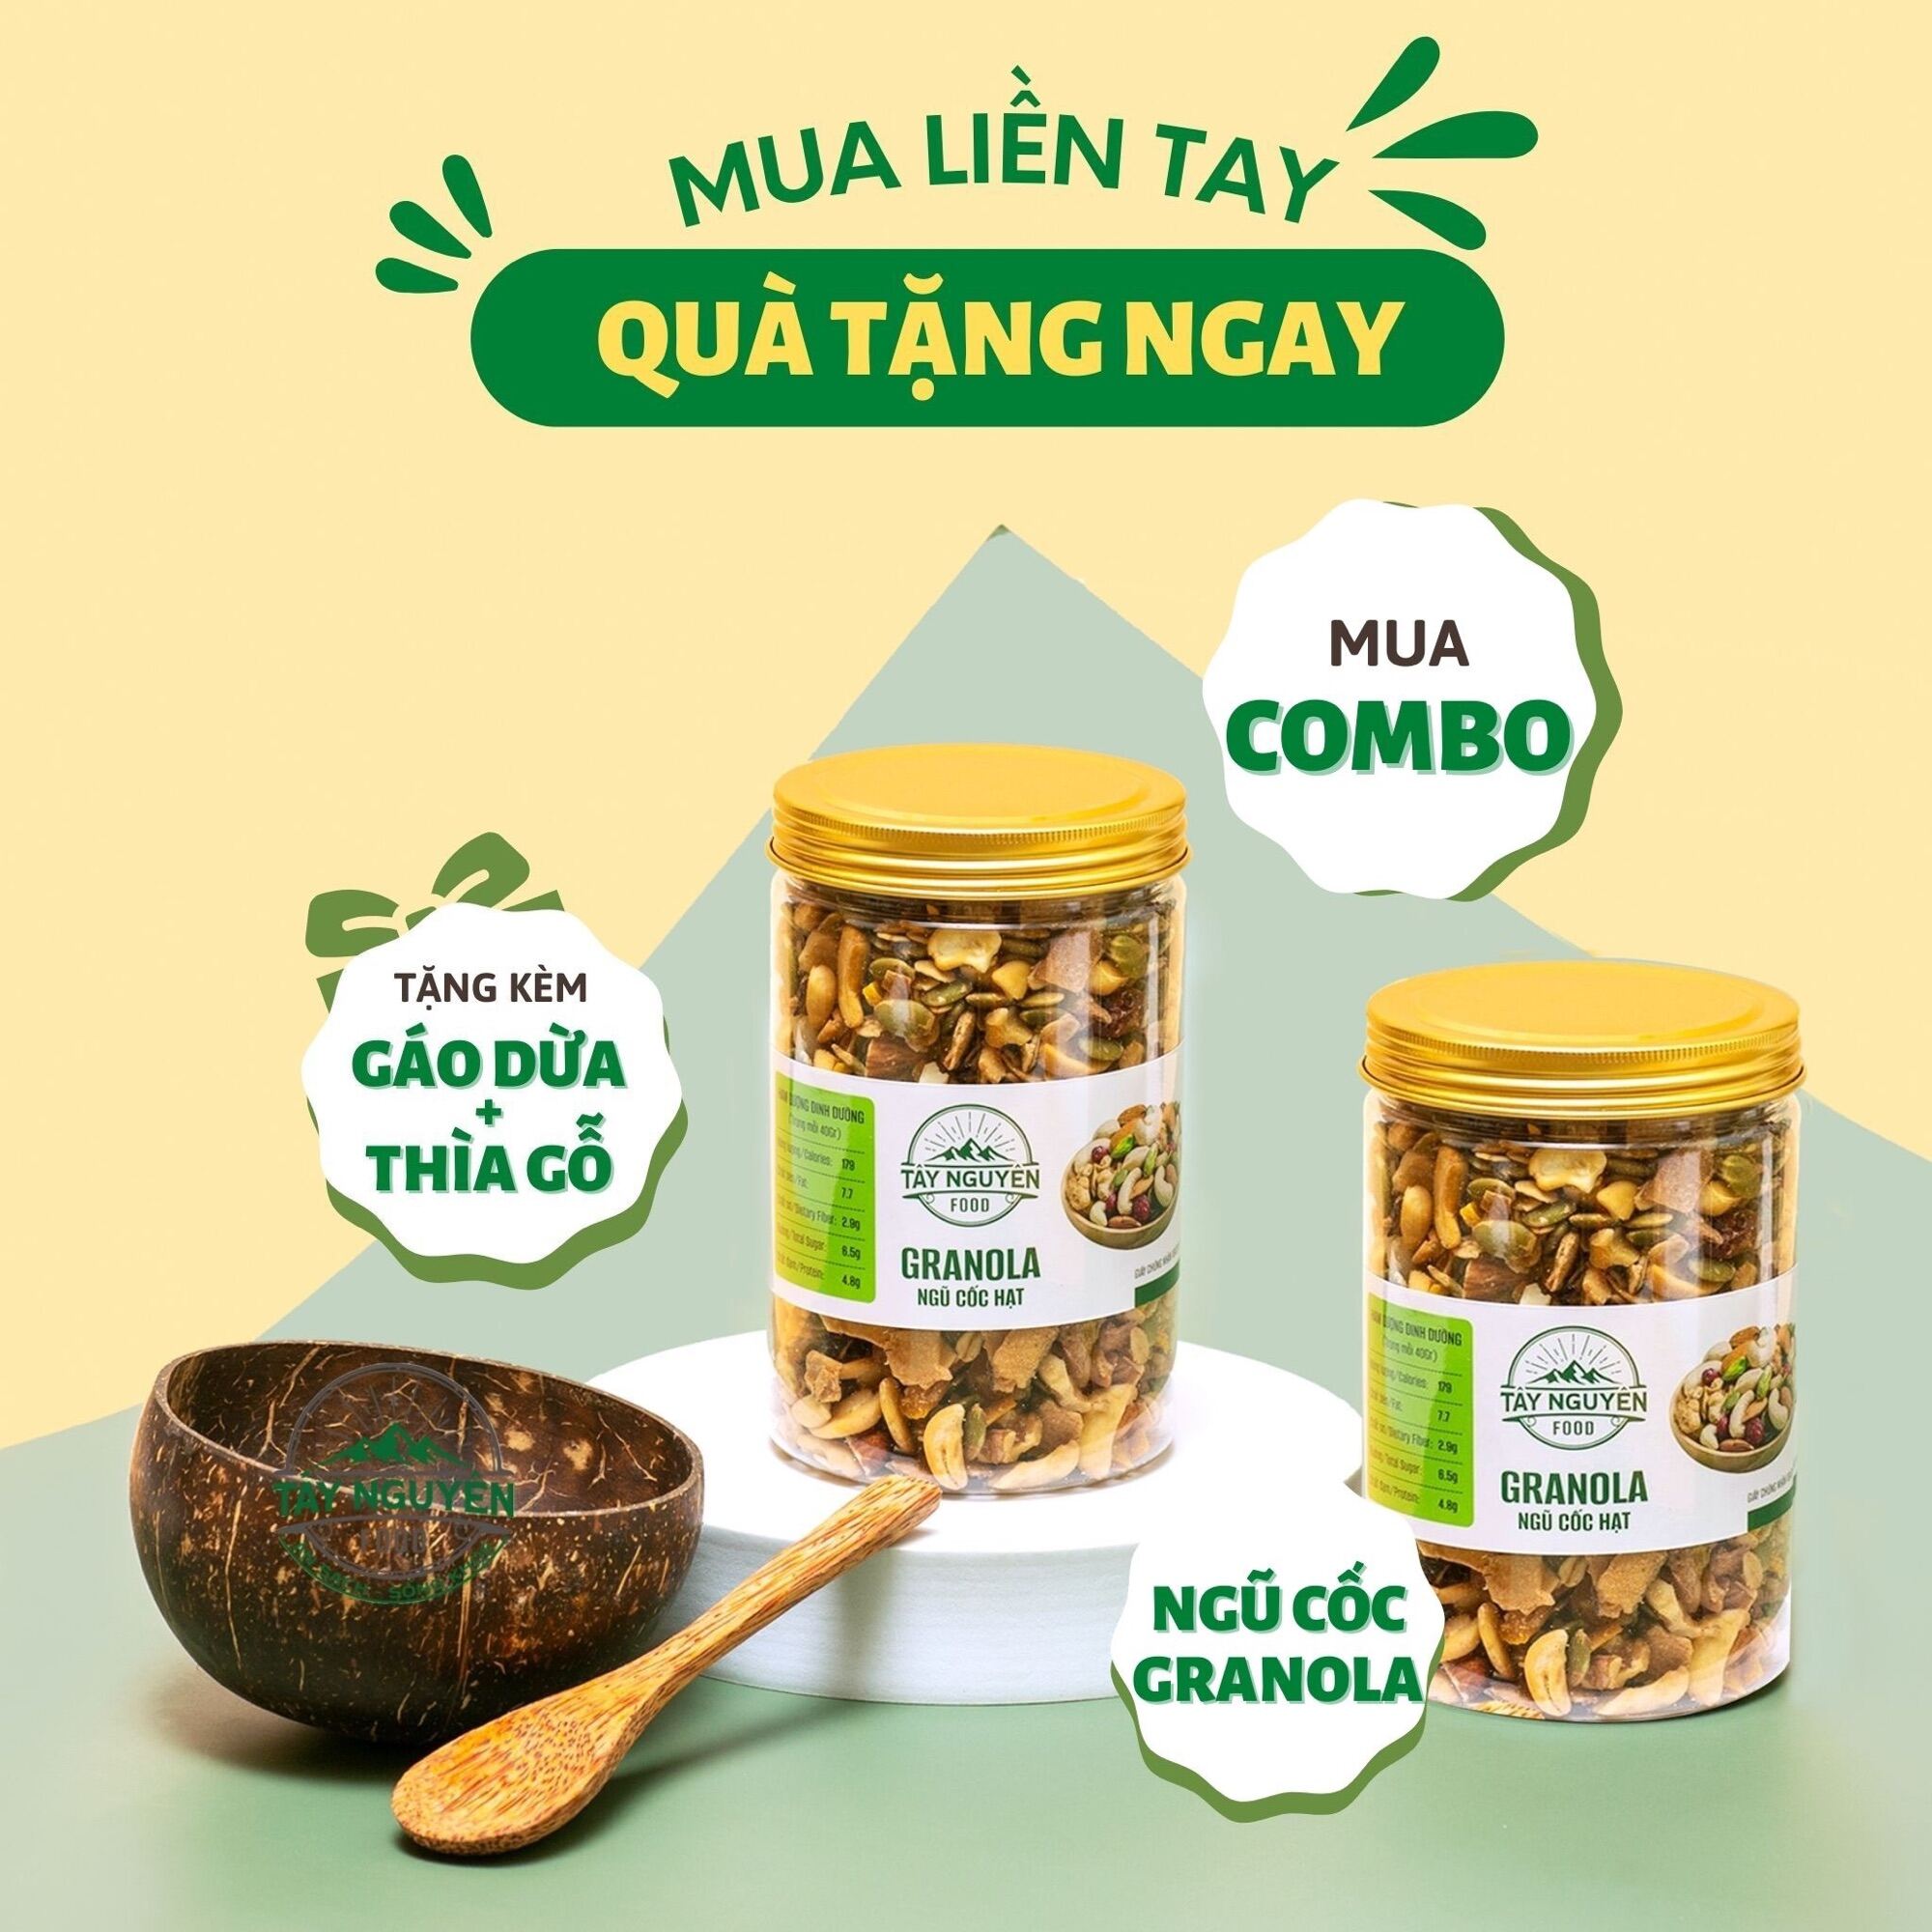 Combo 2 hũ Granola siêu hạt sấy mật ong không đường 500g kèm 1 bộ Gáo dừa và thìa gỗ Tây Nguyên Food - Việt Nam giá ưu đãi